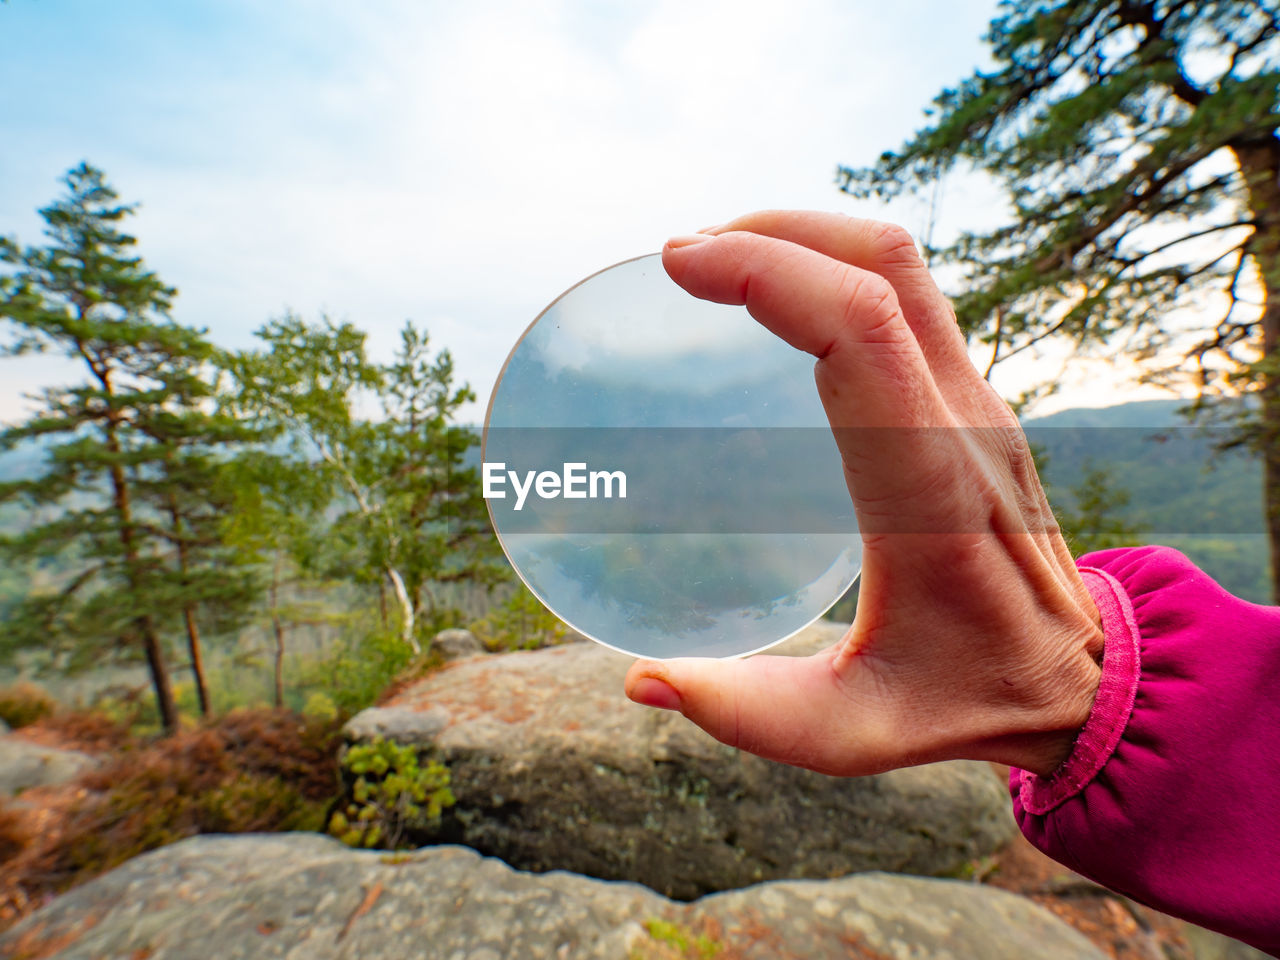 Blurry mountains captured in glass ball reflection hold in fingers. saxon switzerland, deutschland